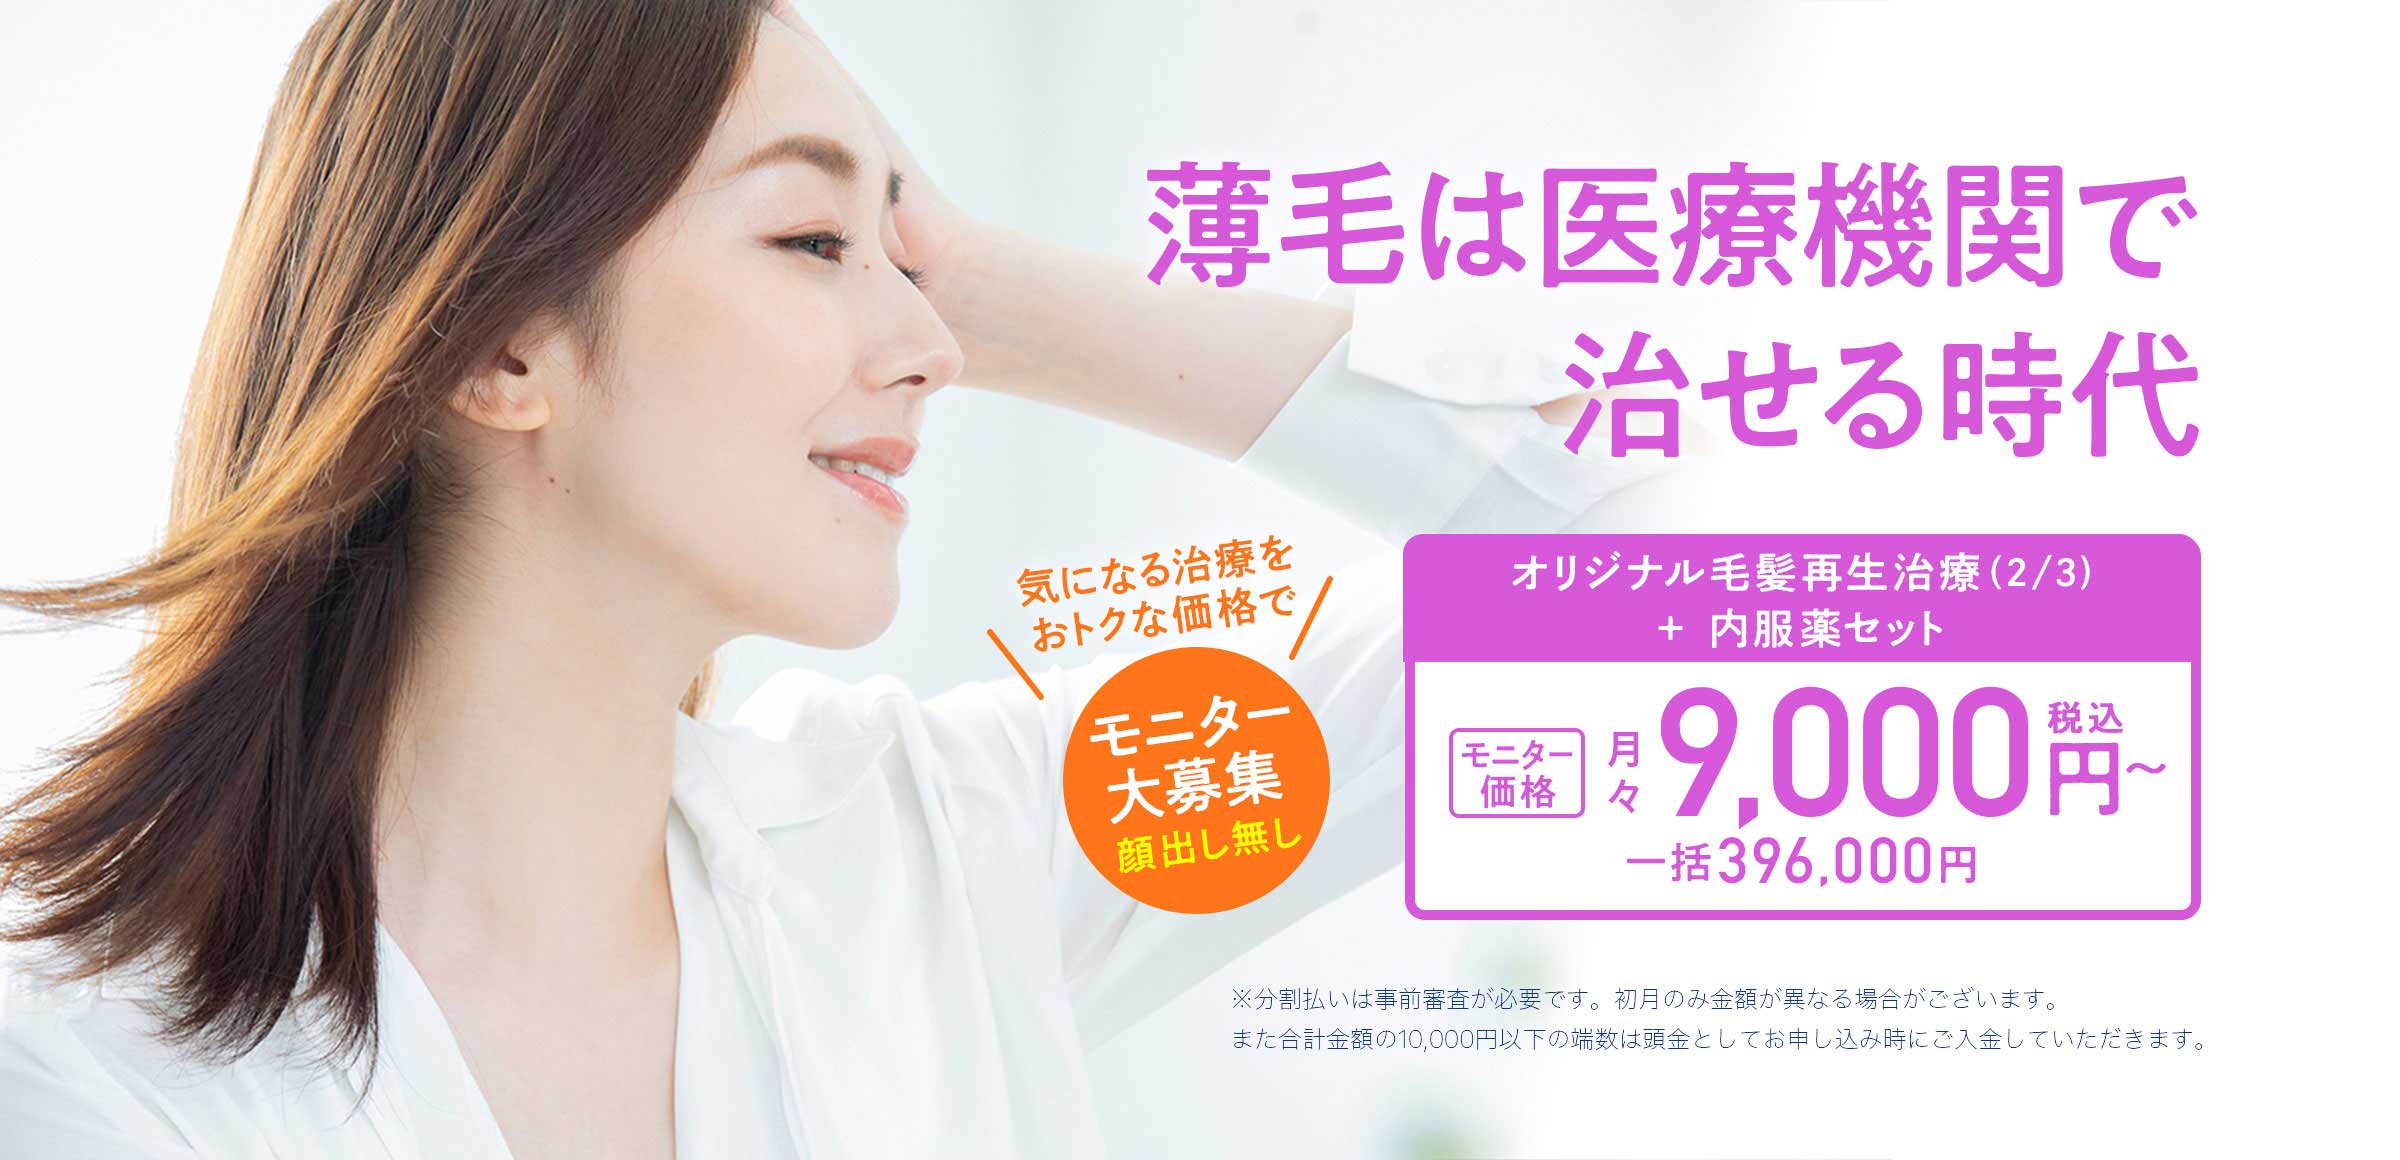 女性 オリジナル毛髪再生治療(2/3)と内服薬セット モニター月々9,000円〜（税込み）